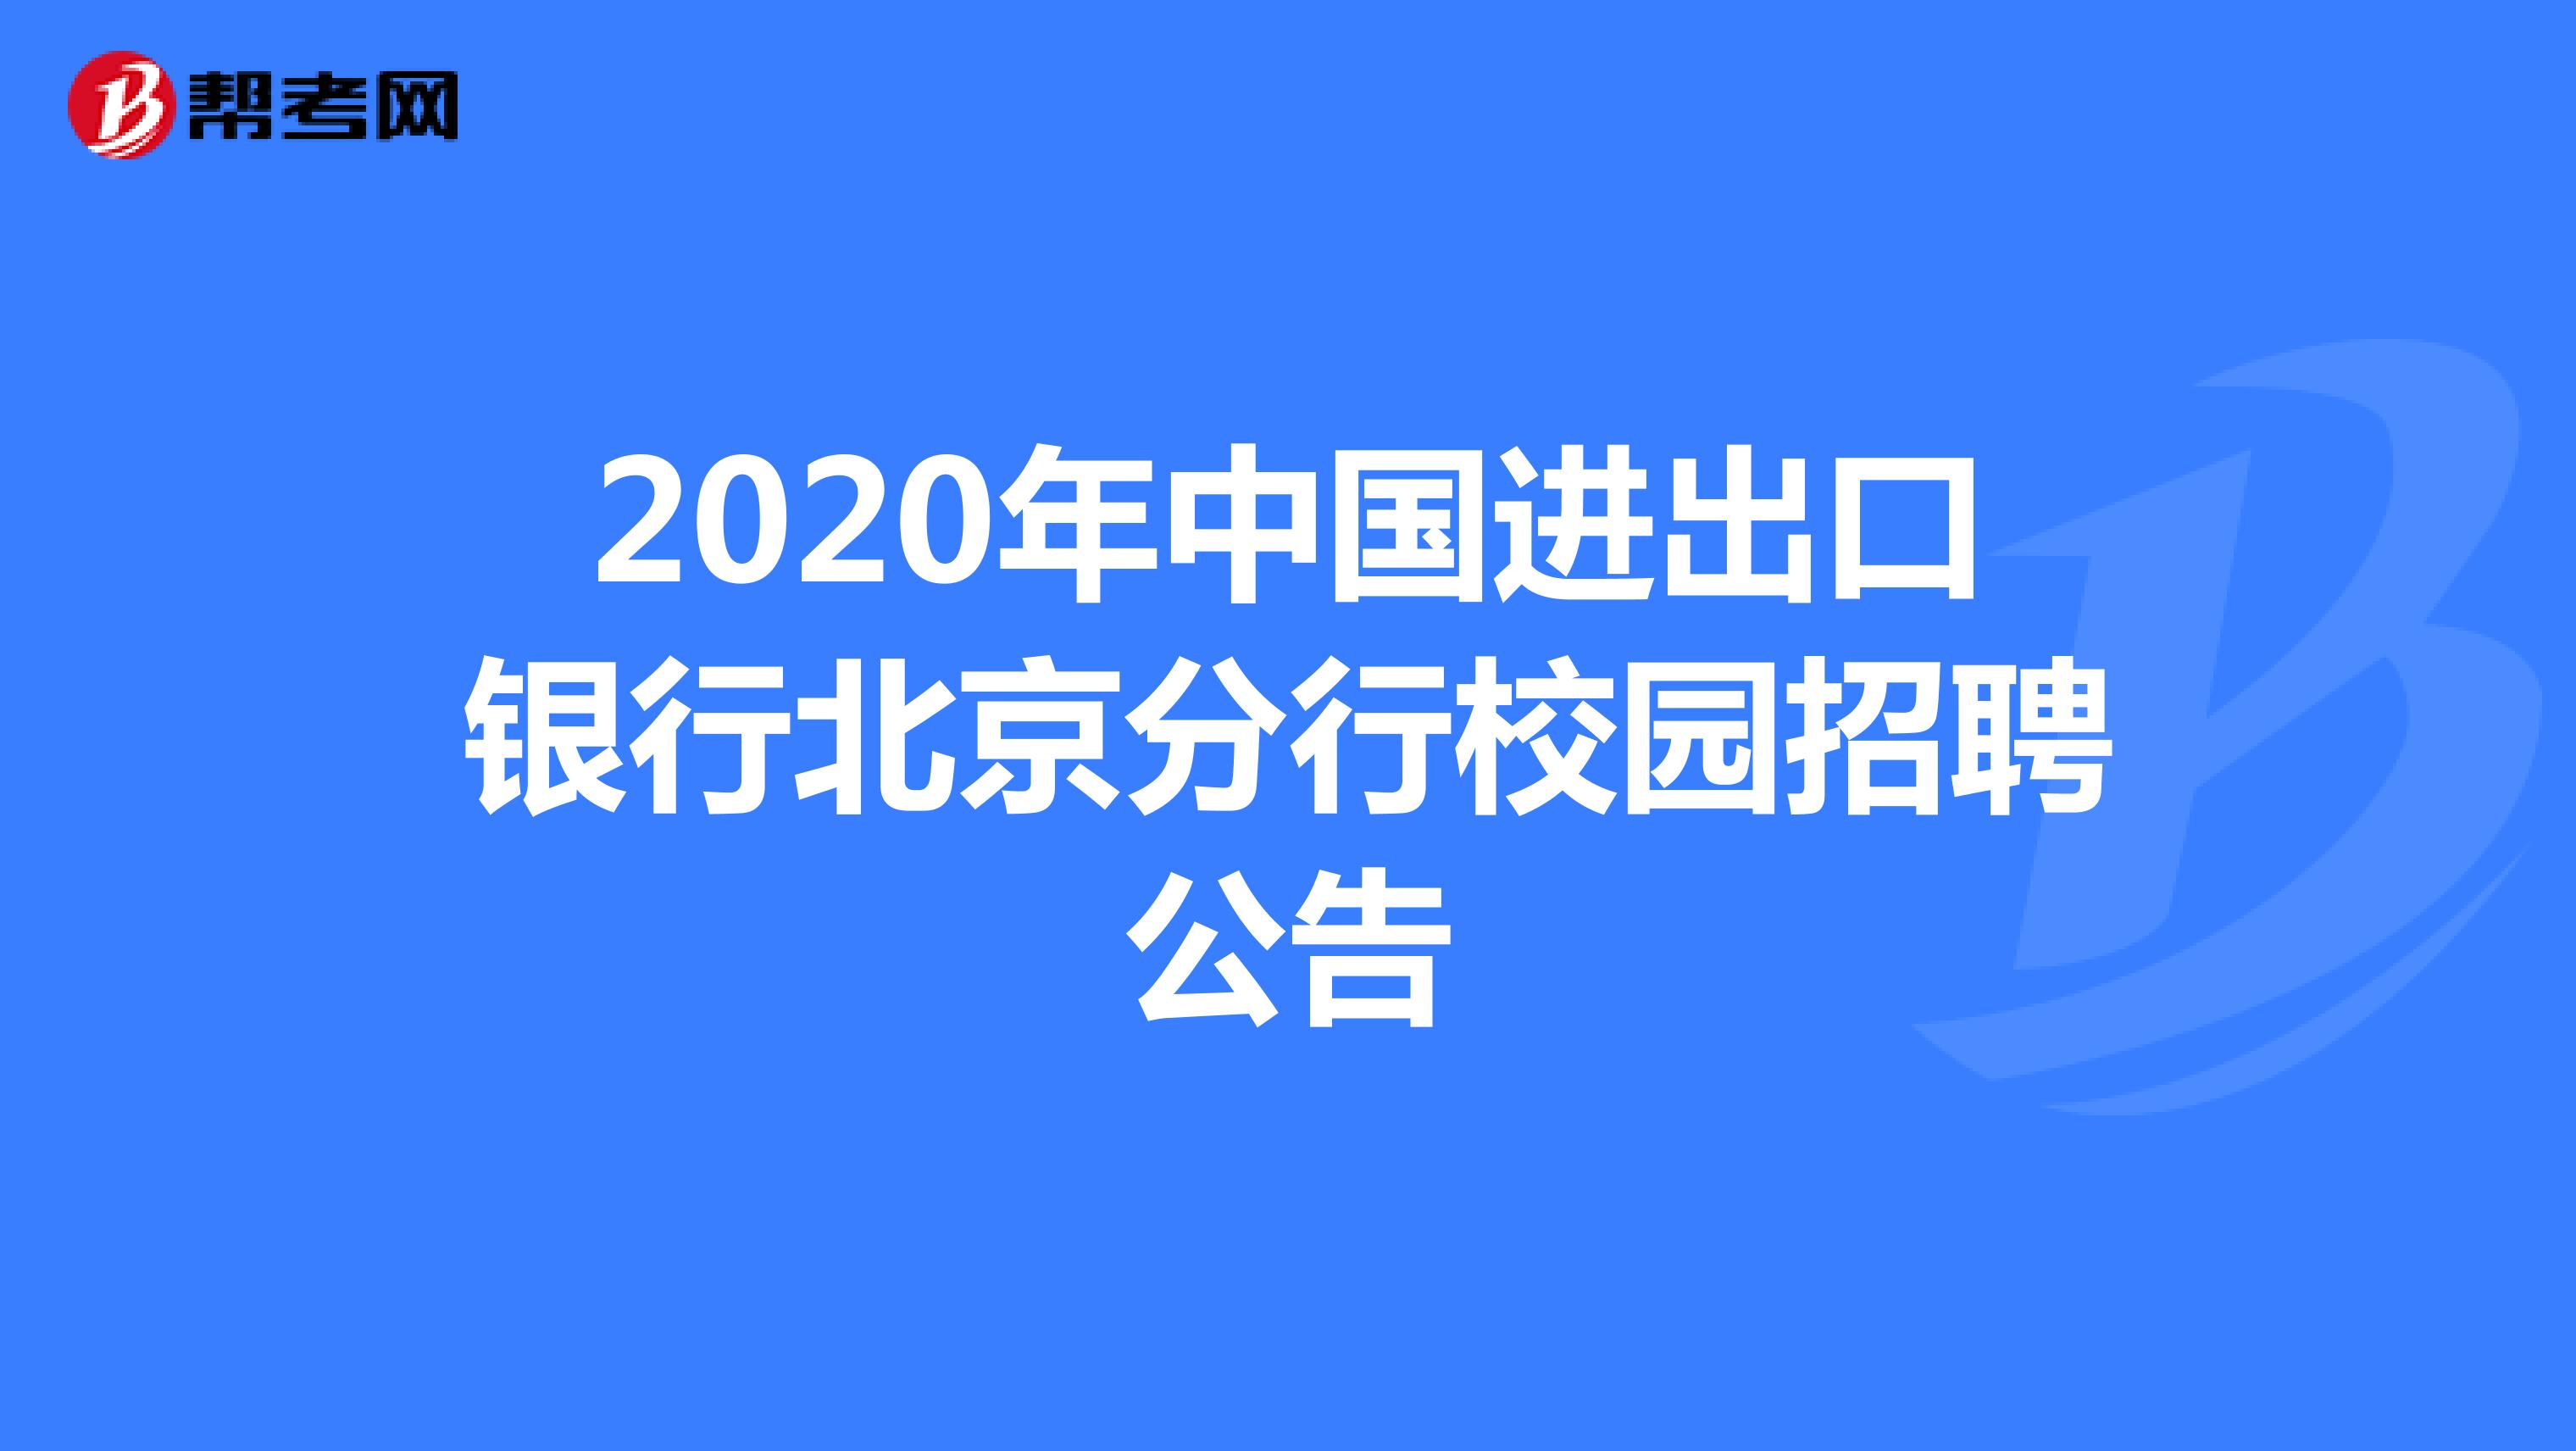 2020年中国进出口银行北京分行校园招聘公告